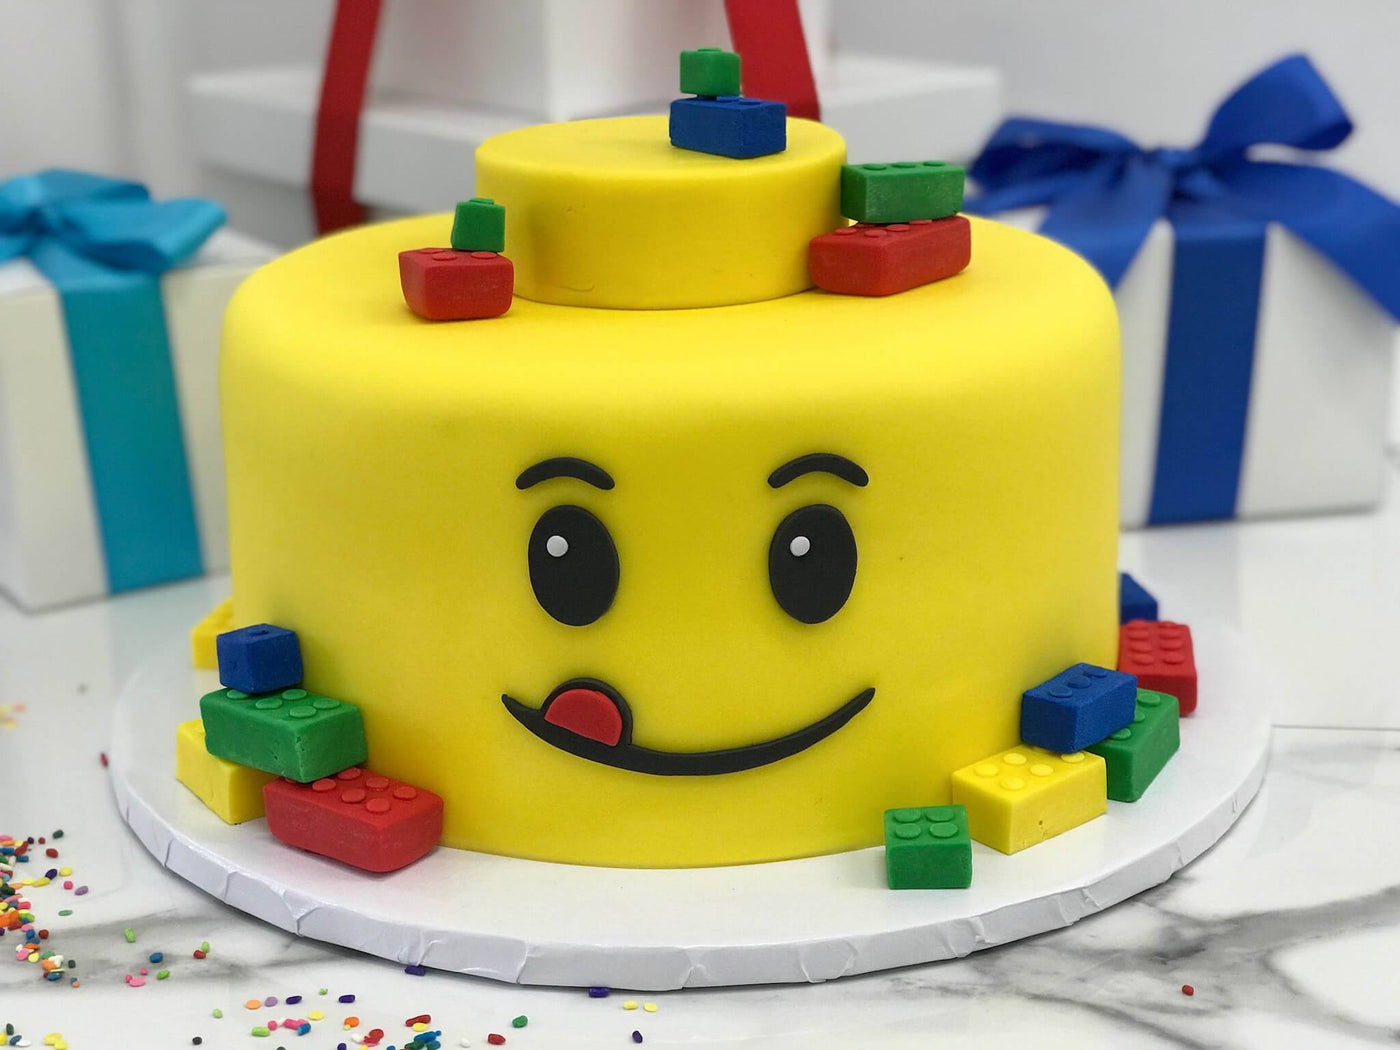 Lego Cake 1 - Sweet E's Bake Shop